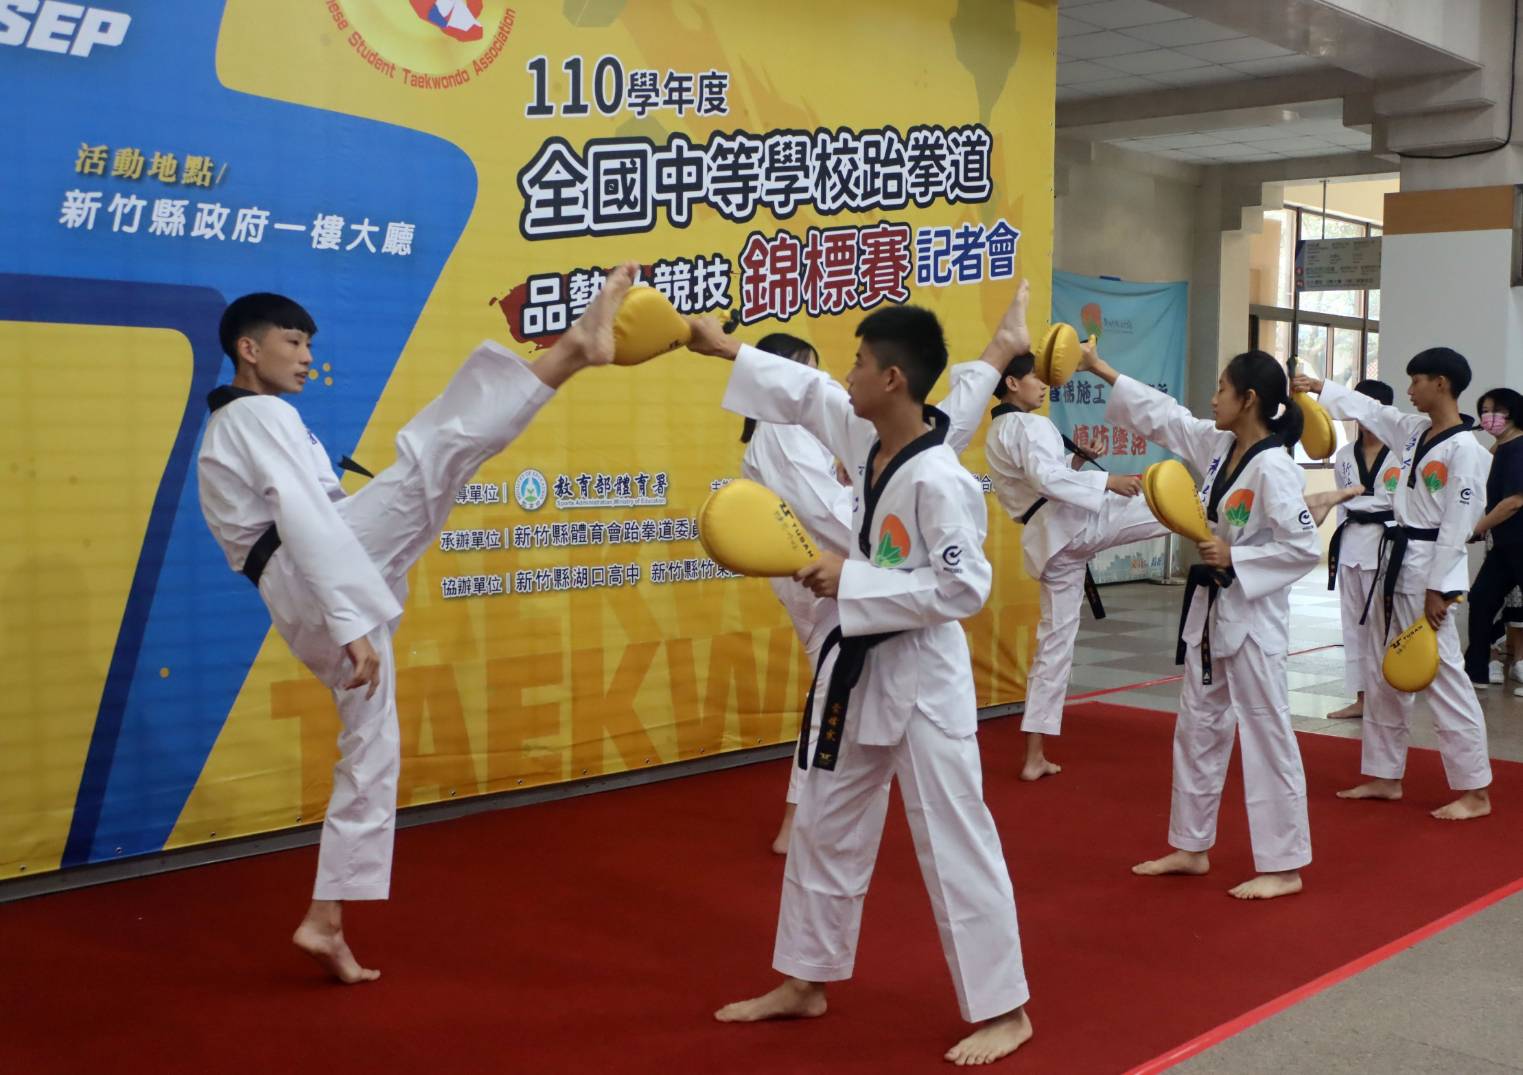 新竹縣立湖口高中、東泰高中的跆拳道選手在記者會上示範表演。官方提供